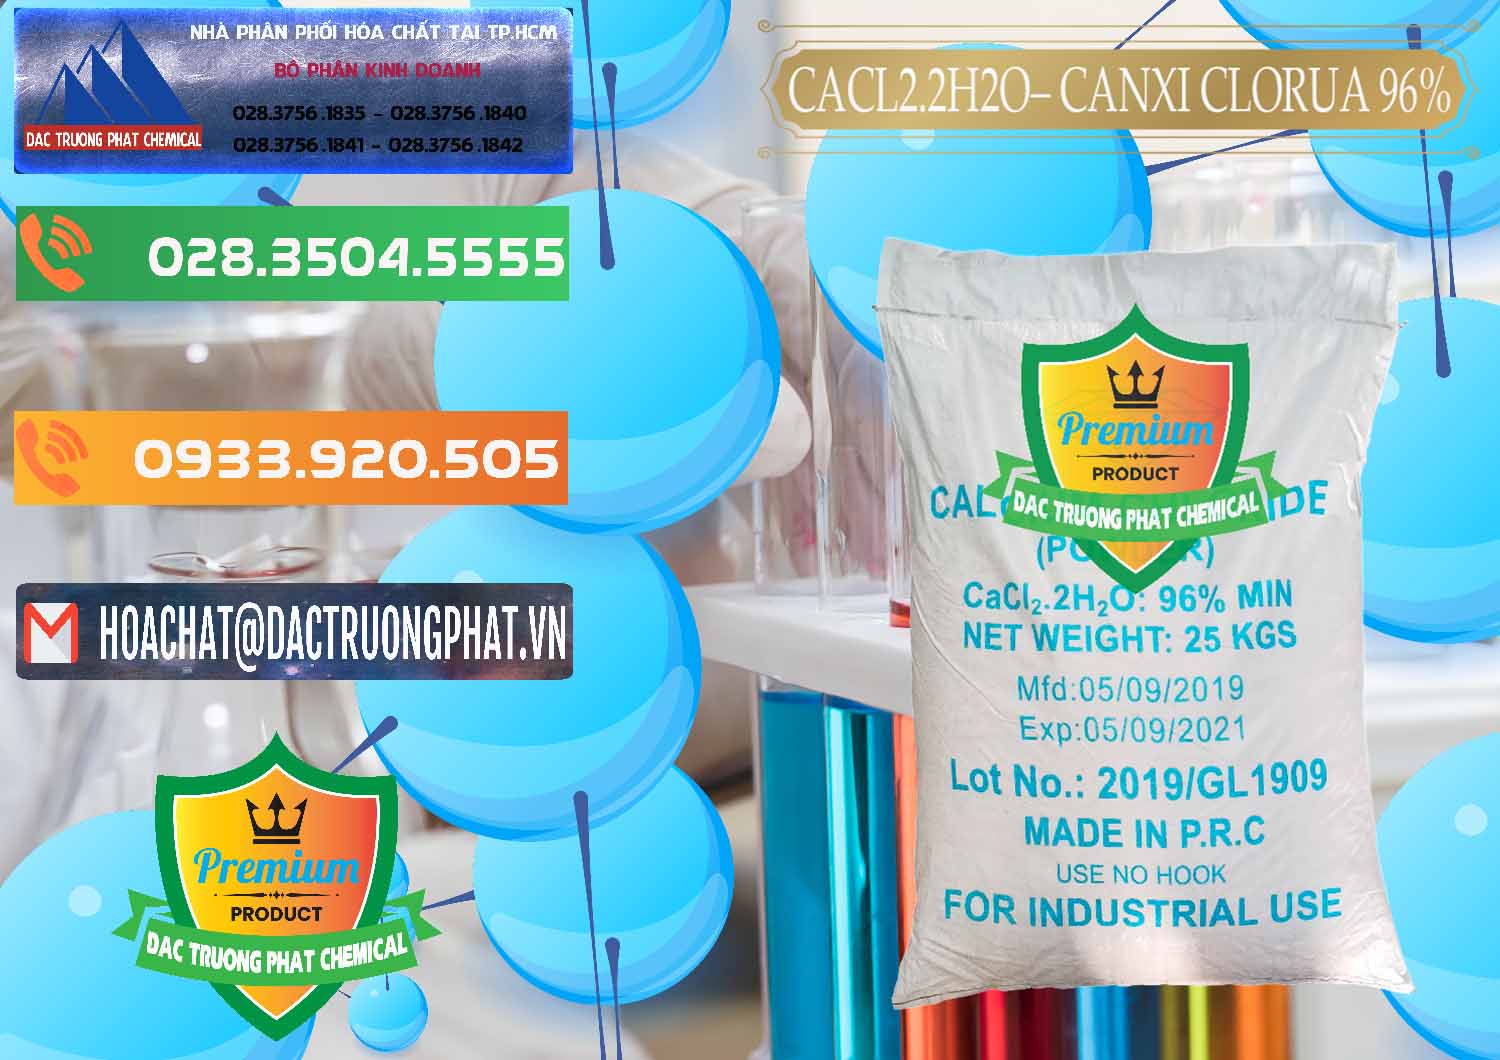 Nhà cung ứng và bán CaCl2 – Canxi Clorua 96% Logo Kim Cương Trung Quốc China - 0040 - Đơn vị chuyên cung cấp & bán hóa chất tại TP.HCM - hoachatxulynuoc.com.vn